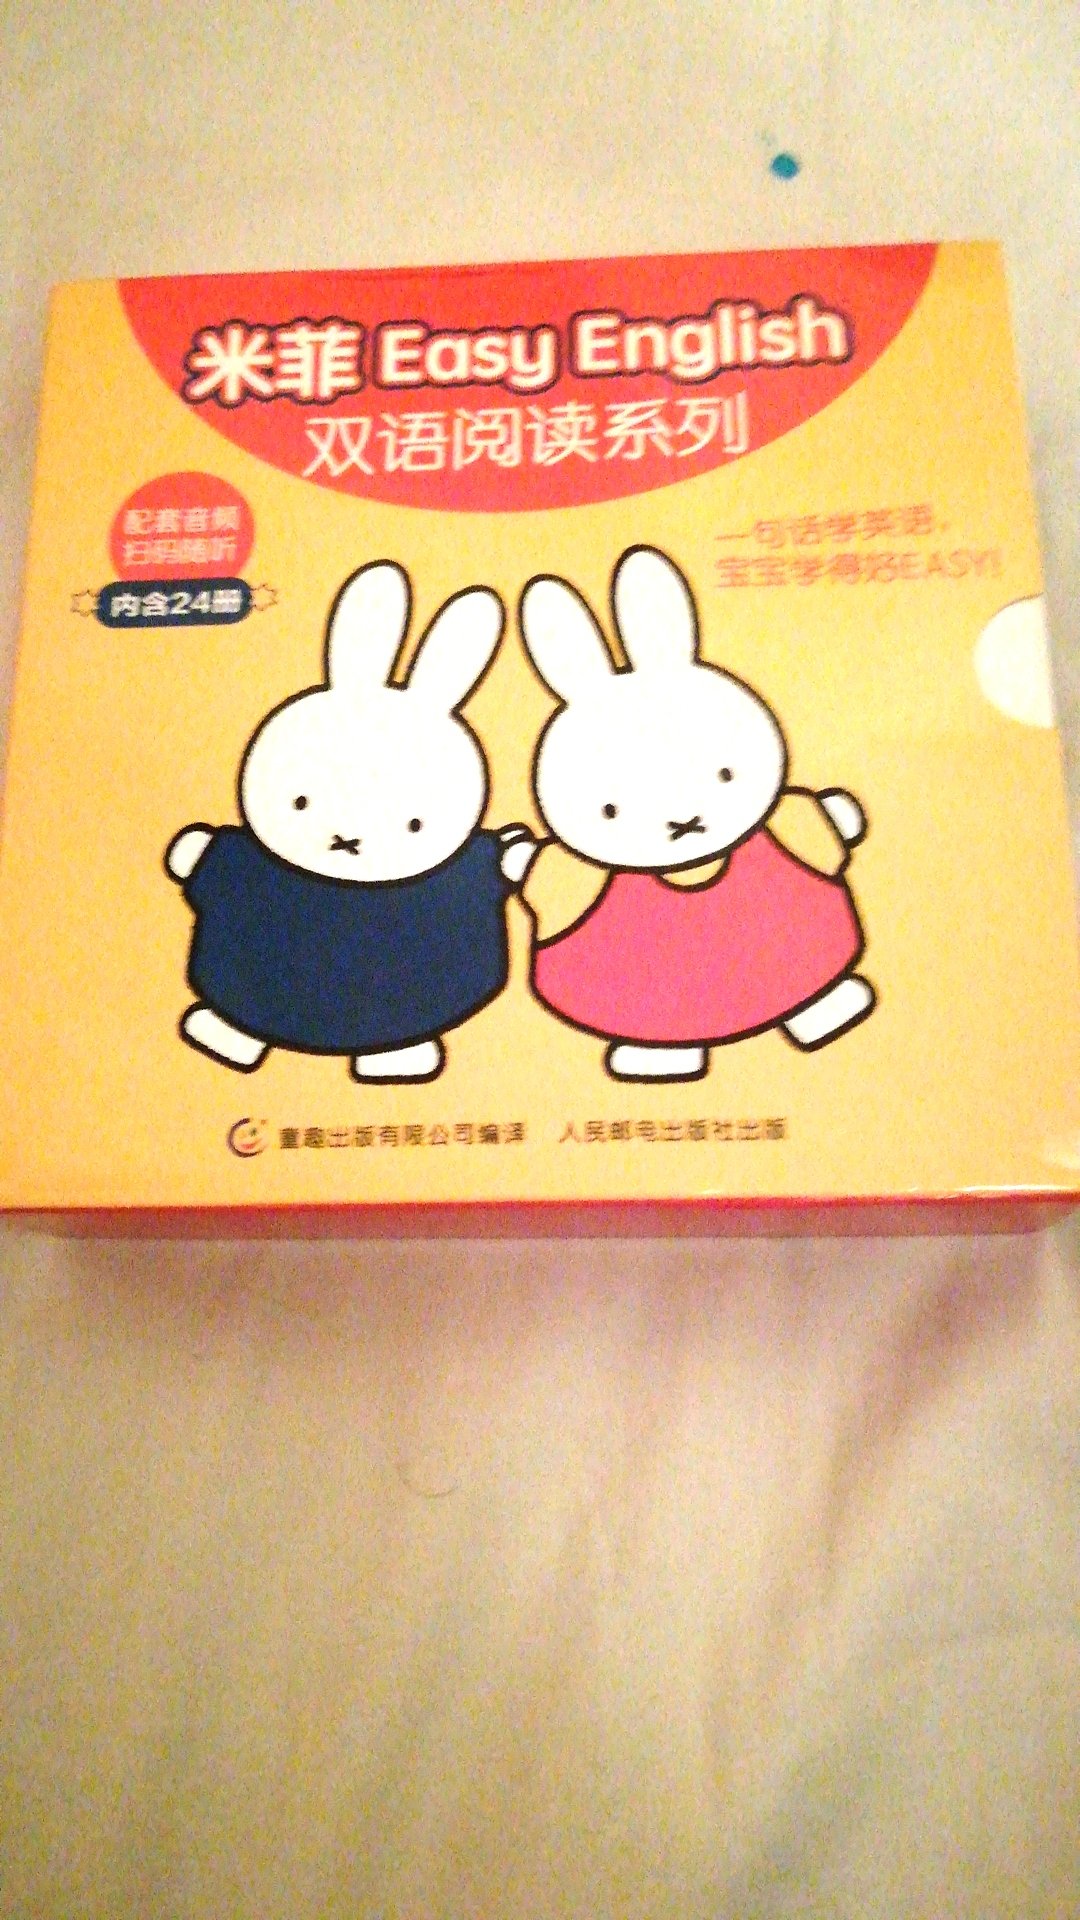 很好的一套书，觉得很适合英语启蒙，中文放在封底也是特别好的，明天就给娃学起来